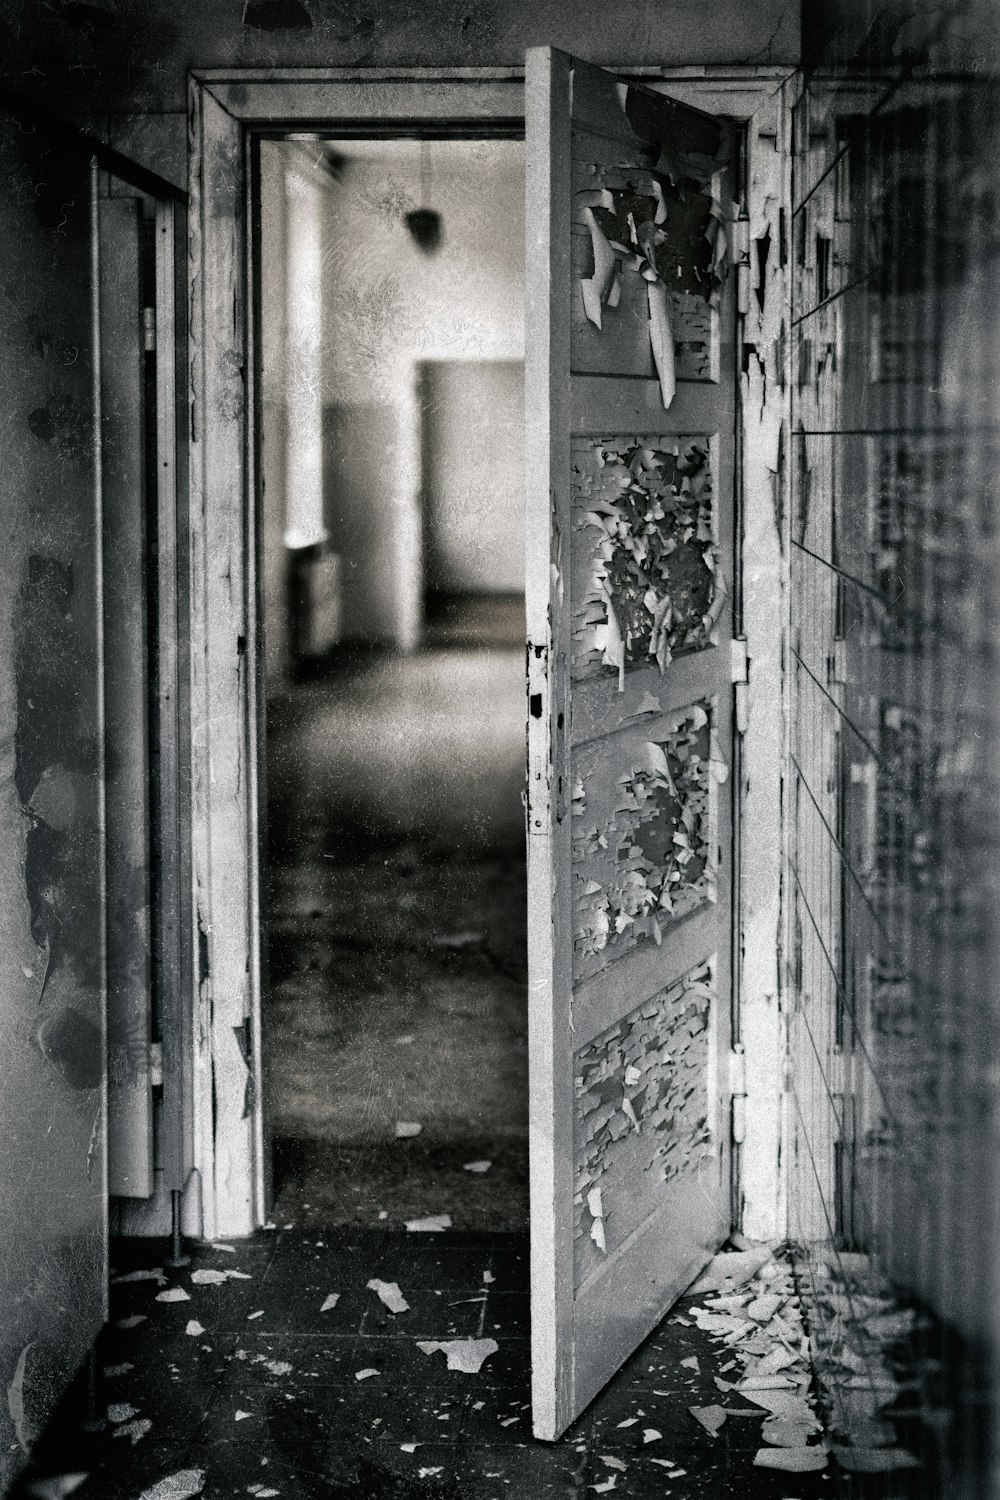 fotografia in scala di grigi di una porta aperta